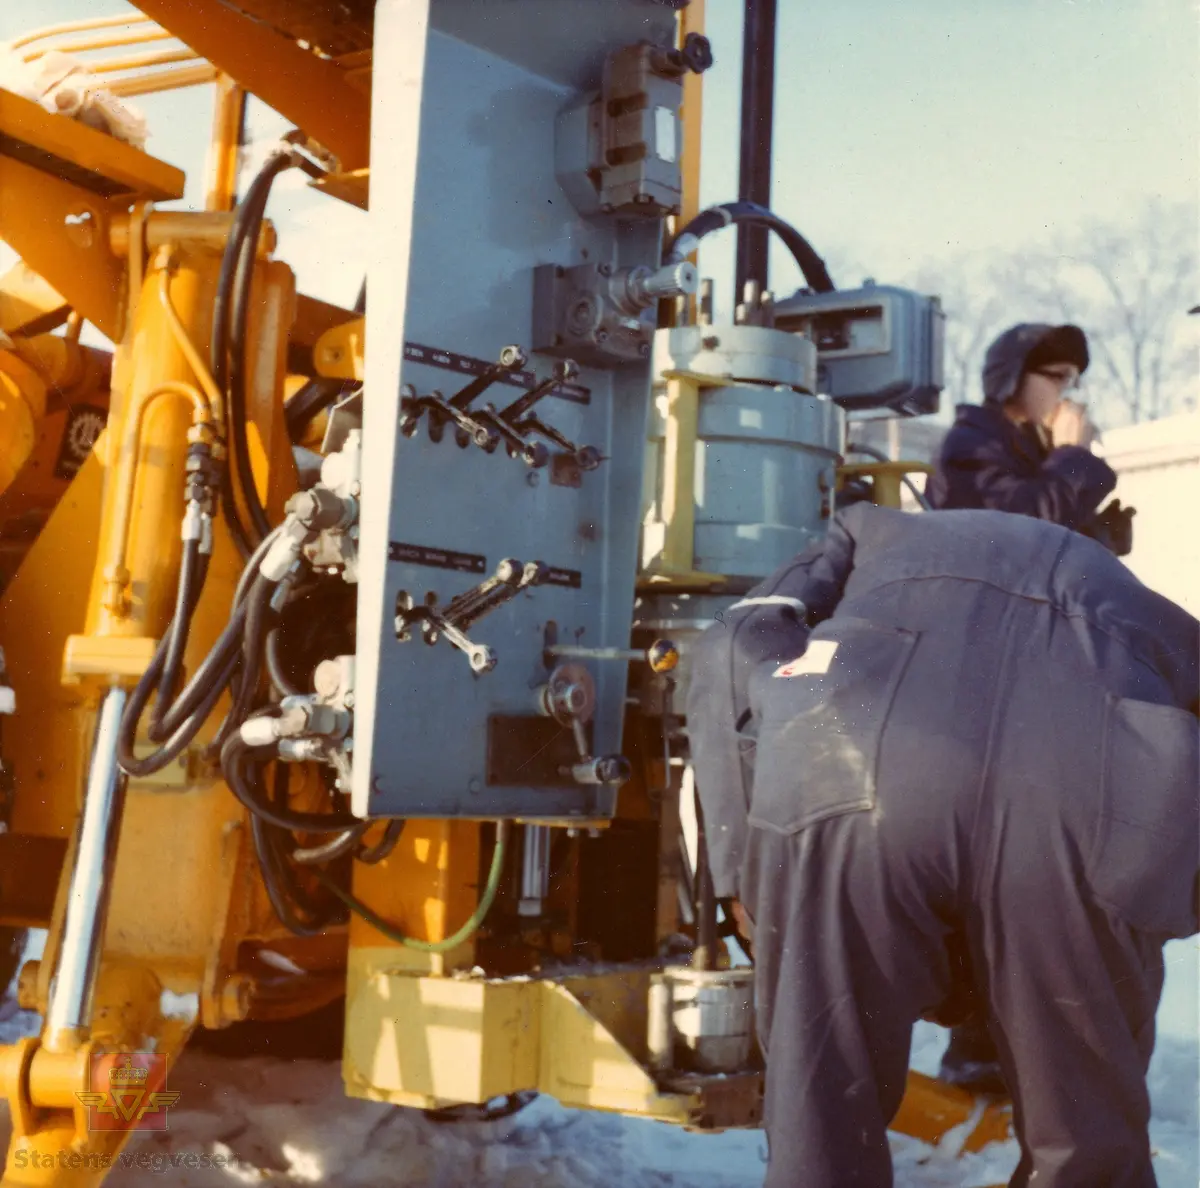 Kurs i bruk av "Hydroriggen" (grunnboringstraktor) utenfor Veglaboratoriet i Oslo februar 1970. 

Utviklingen av “Hydroriggen”på slutten av 1960-t revolusjonerte grunnboringsarbeidet. Det manuelle arbeidet ble redusert, den var lettere å flytte og hadde større kapasitet og evne til nedtrengning. En ny metode kalt dreietrykksondering ble tatt i bruk: Man målte hvor mye kraft som måtte til for å trykke borstengene ned i bakken med konstant hastighet og rotasjon. Riggen kunne også benyttes til andre sonderingsmetoder, prøvetaking og vingeboring. Hydroriggen hadde begrenset framkommelighet tiltross for at den var utstyrt med halvbelter.

 Kilde: Rapport nr: 2550, Teknologiavdelingen SVV: "Grunnboringsutstyr 1960-2000"